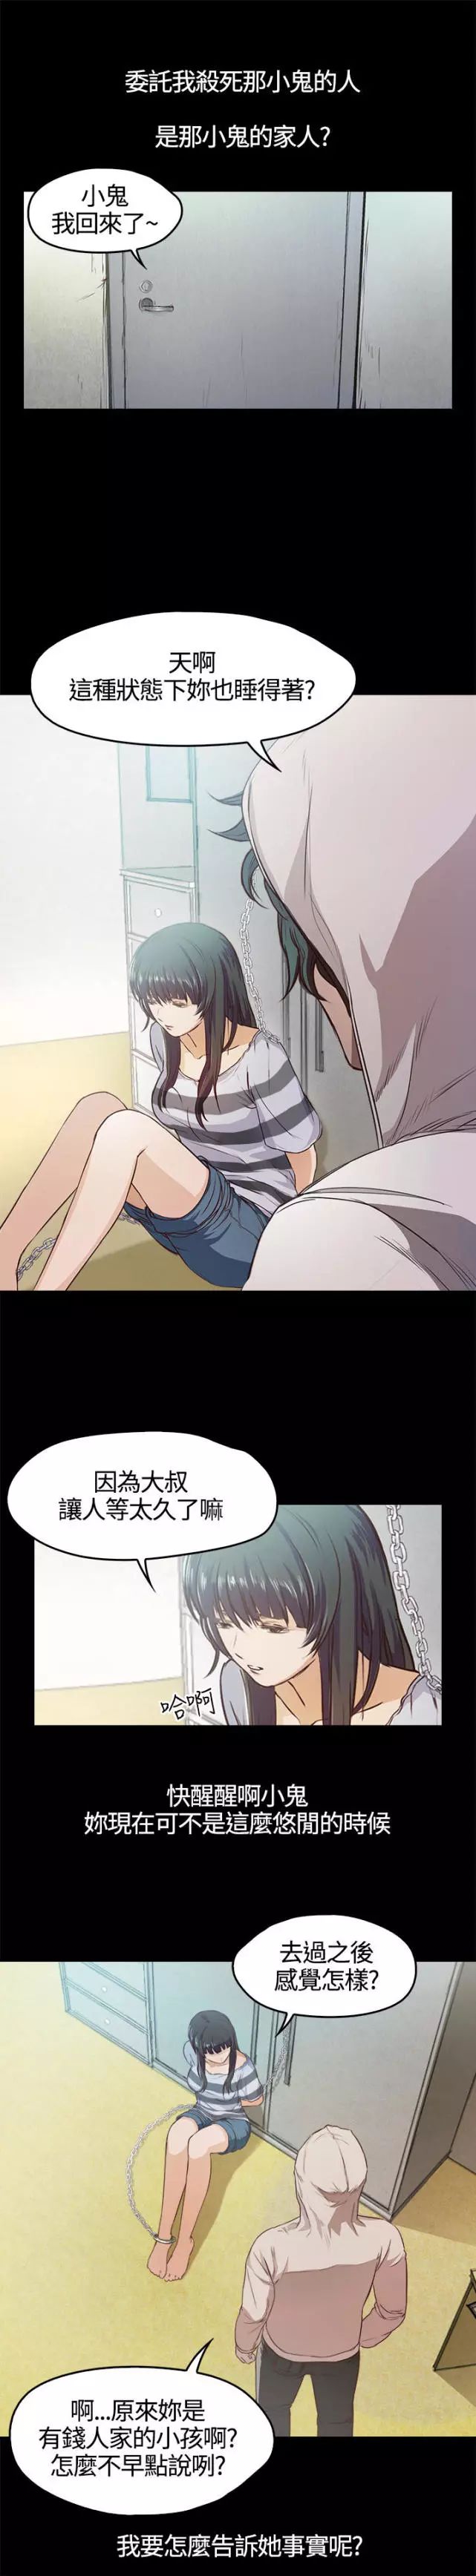 【漫画推荐】被绑架的女高中生